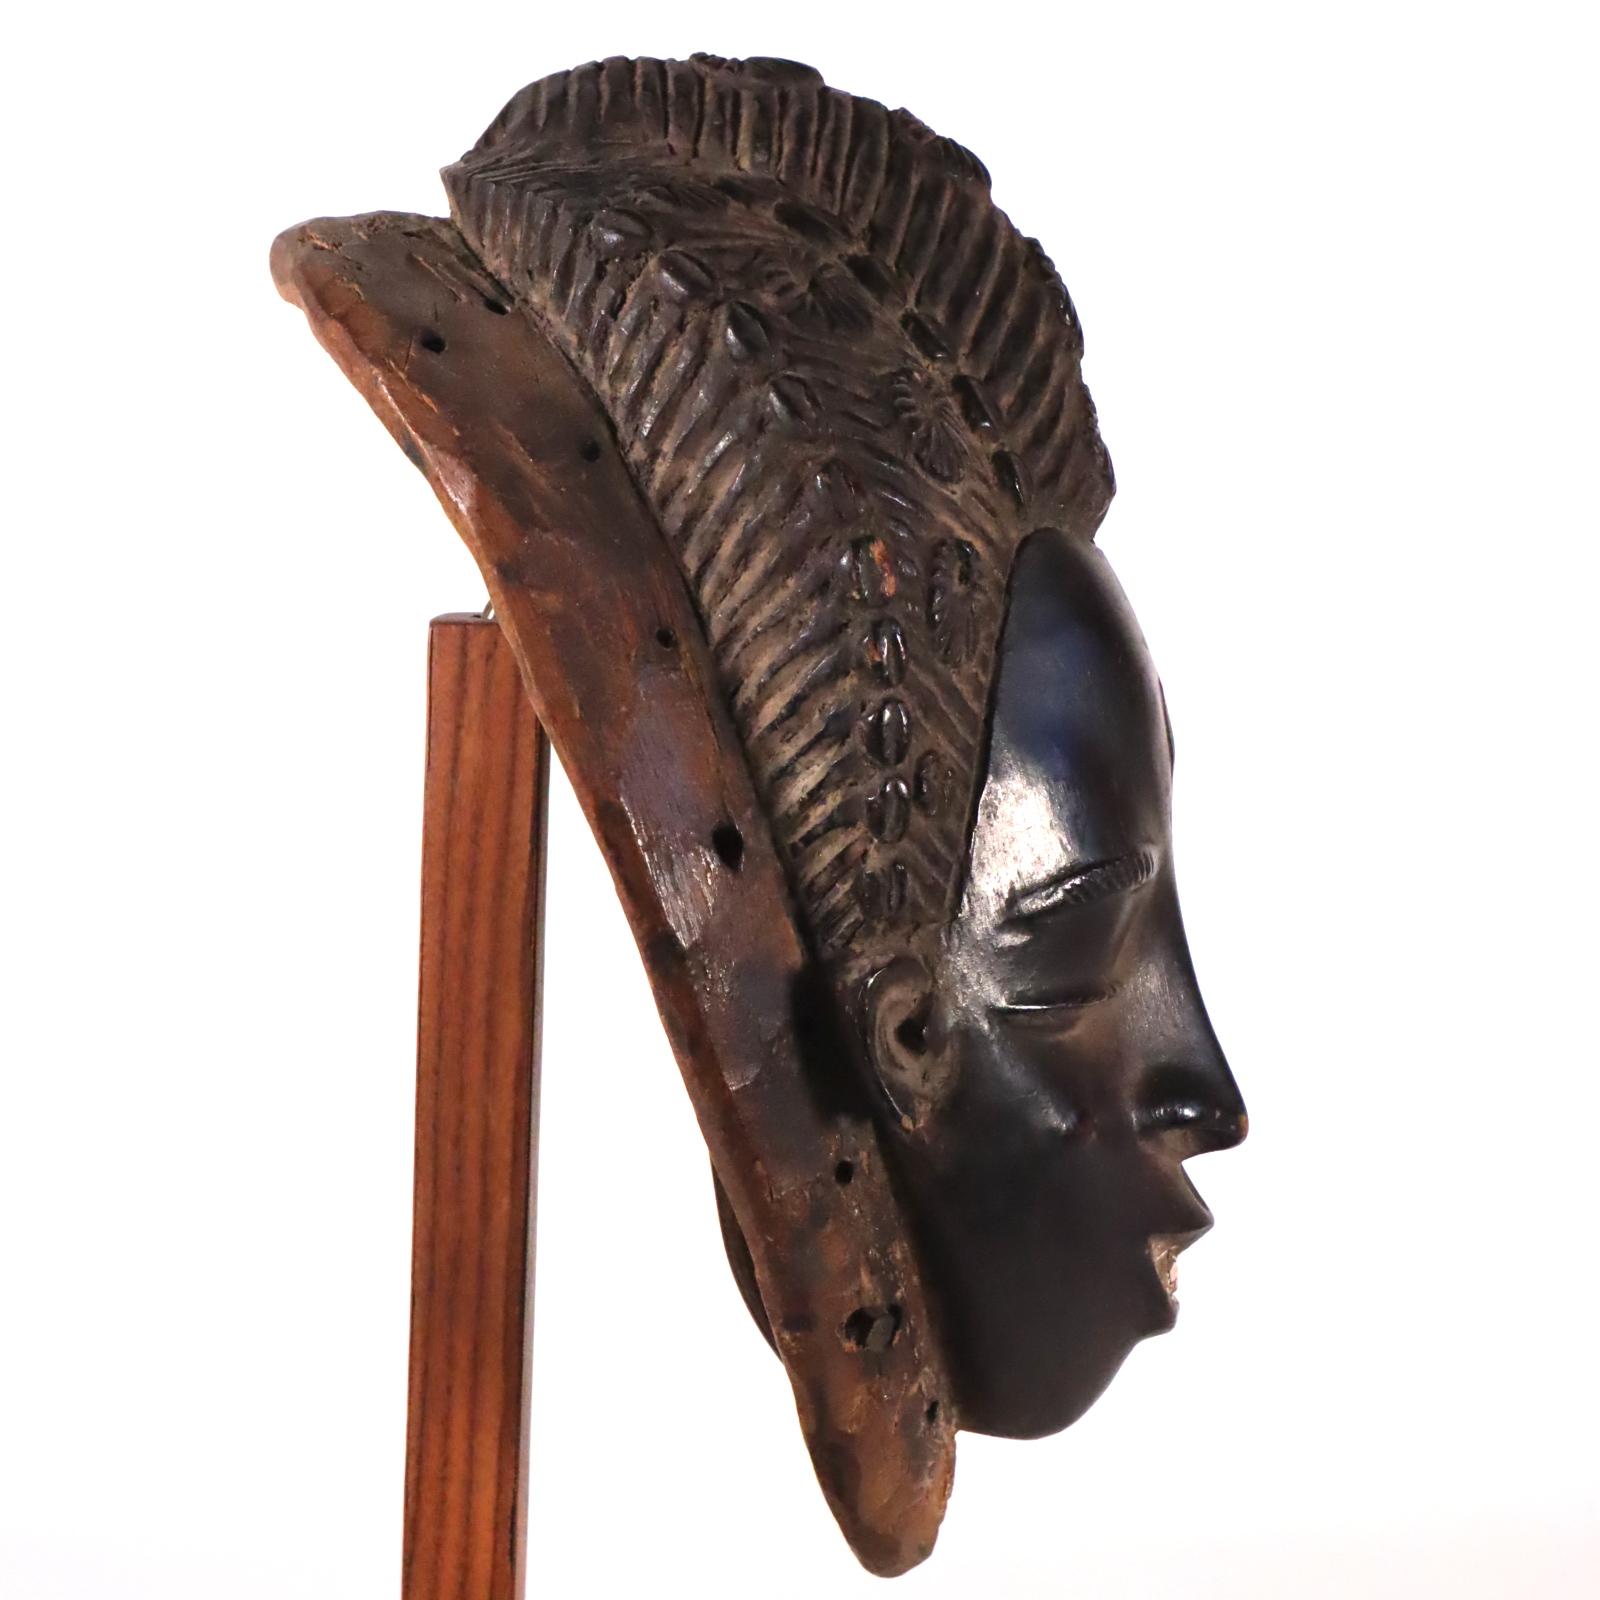 Hardwood Guro Face Mask Ivory Coast West African Tribal Art